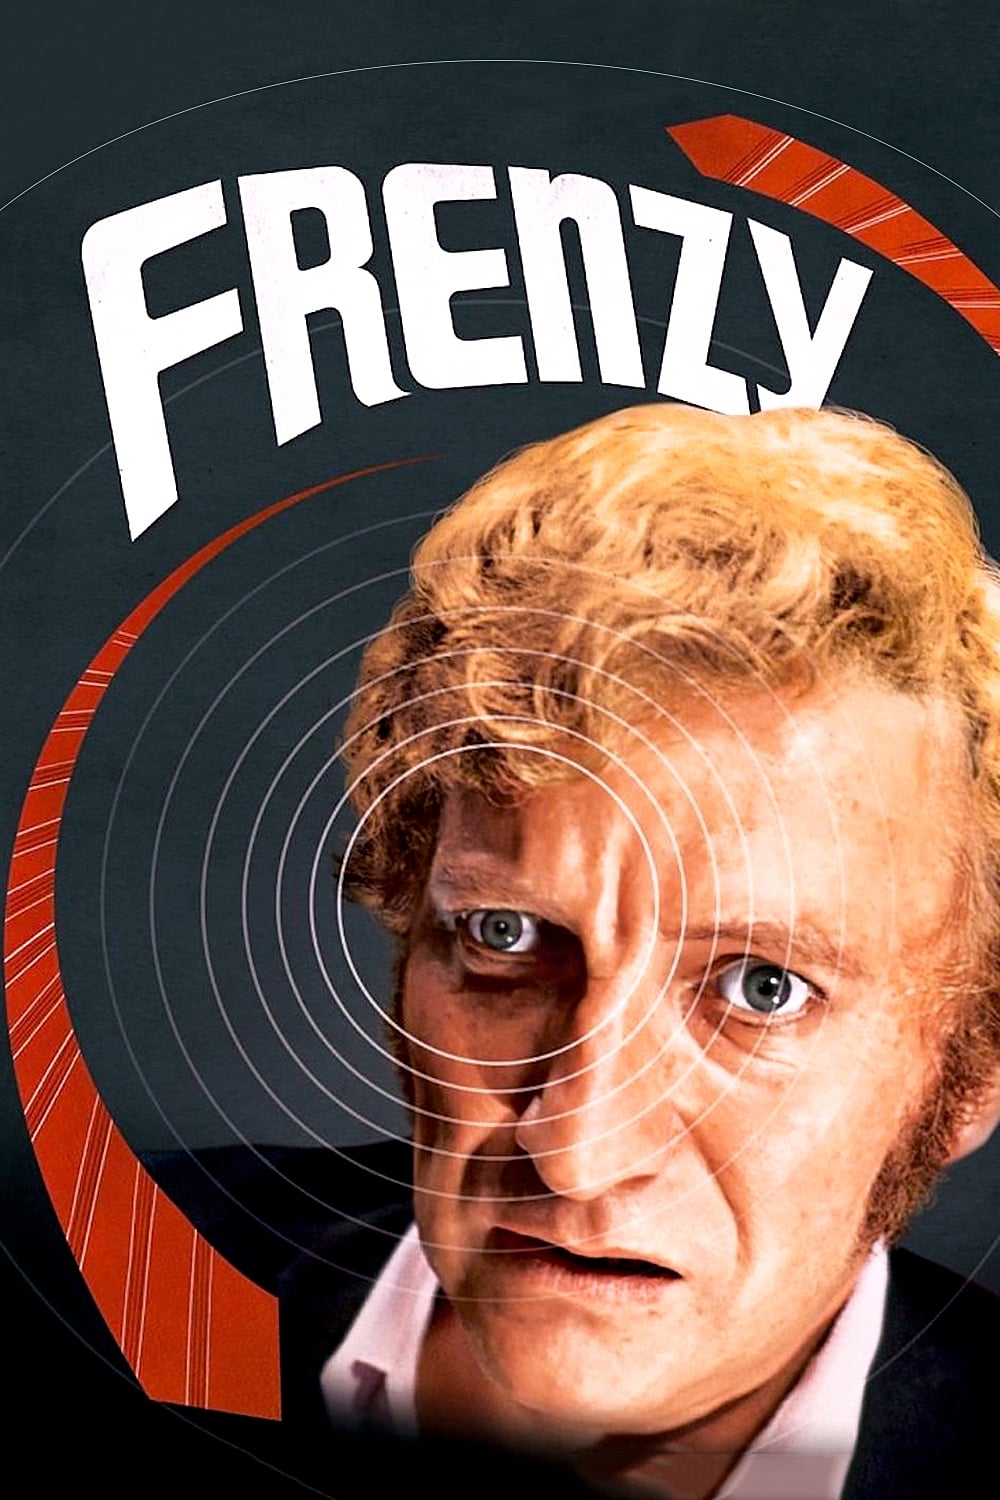 دانلود صوت دوبله فیلم Frenzy 1972